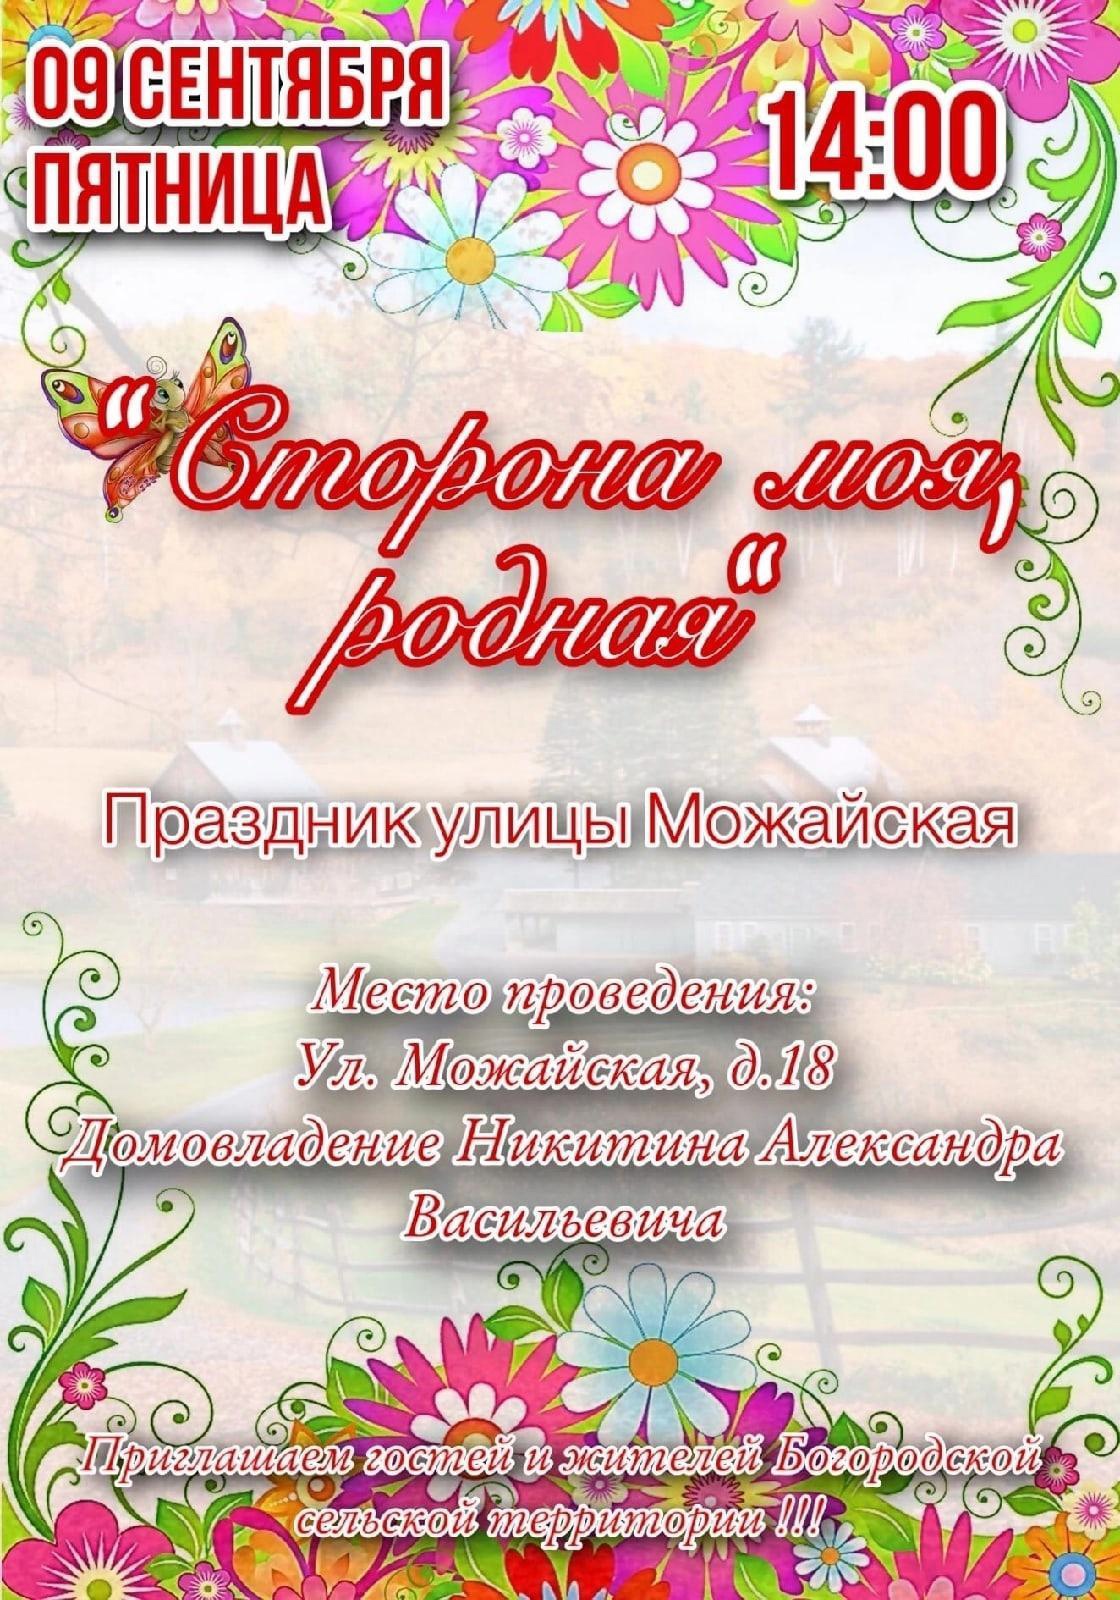 В селе Богородское состоится праздник Дня улицы Можайская. Приглашаем всех желающих посетить мероприятие, которое пройдёт 9 сентября в 14:00..